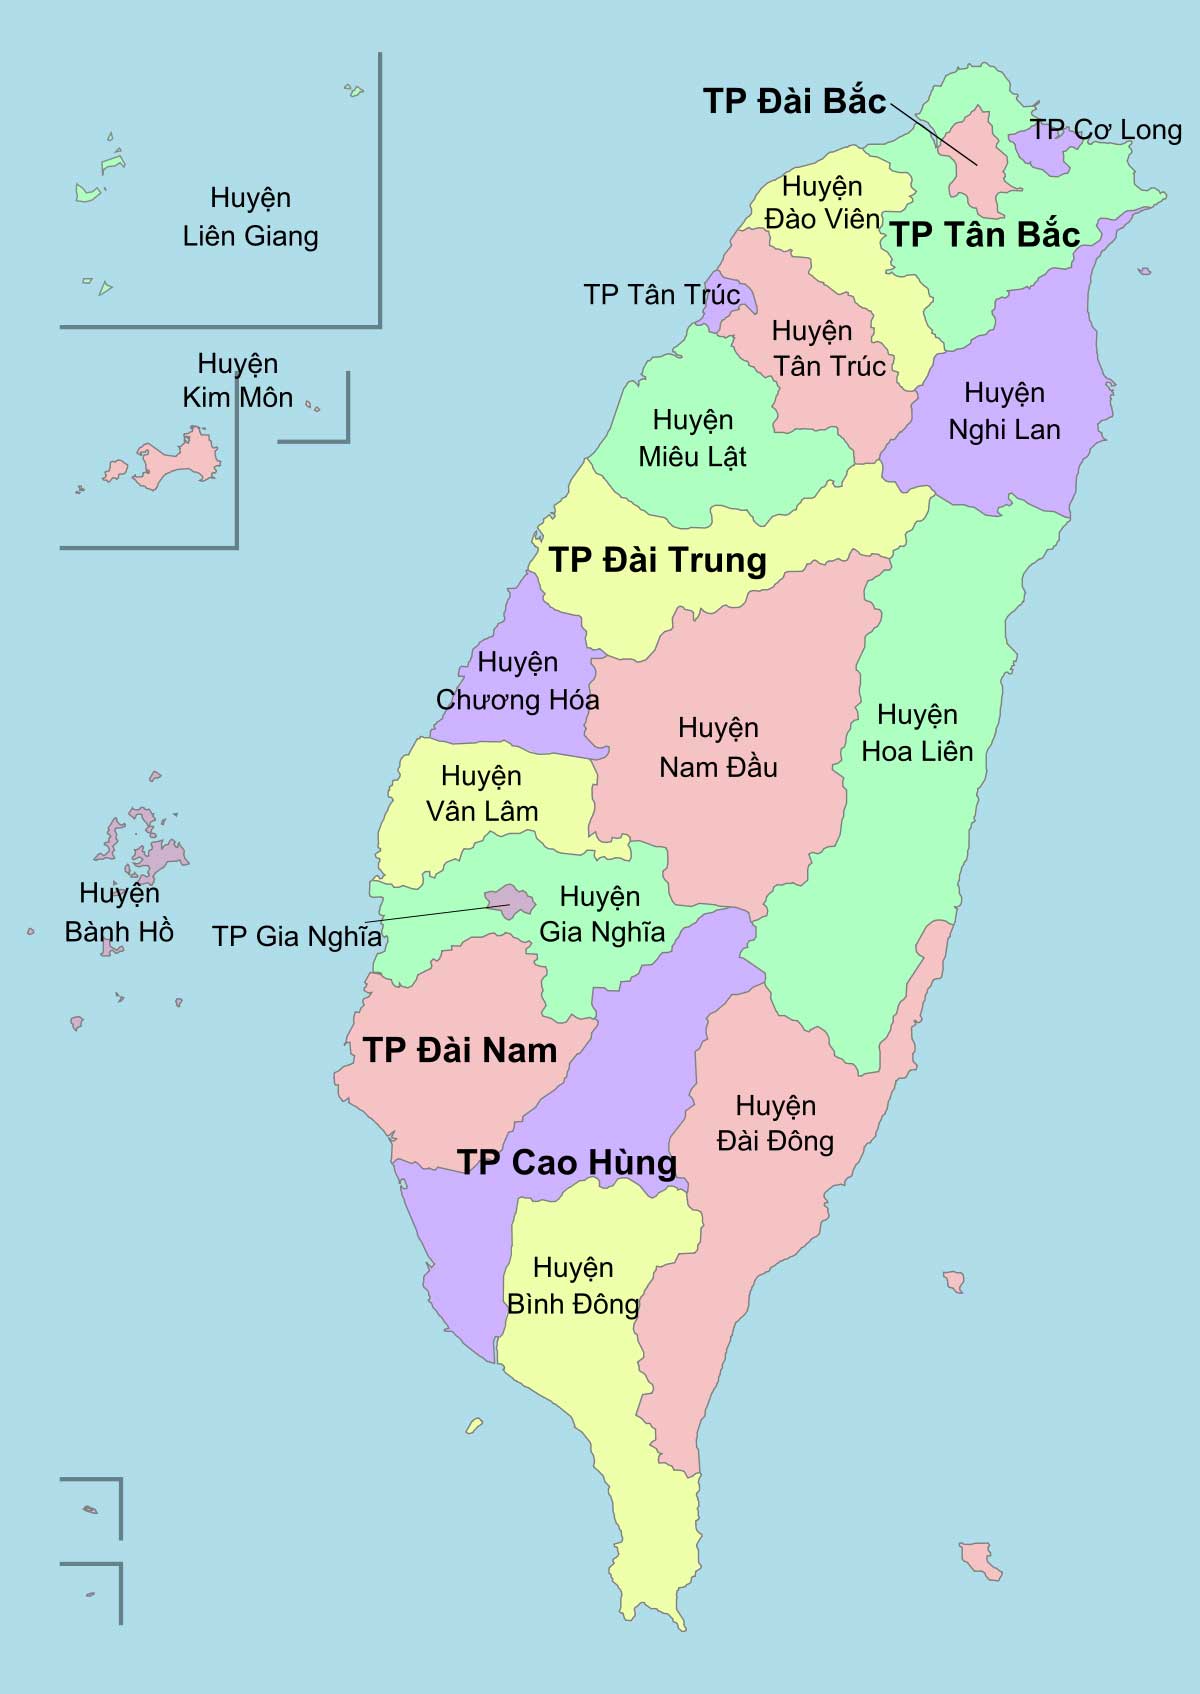 Hãy đến Đài Loan để khám phá vẻ đẹp của đất nước này. Du lịch Đài Loan sẽ mang đến cho bạn những trải nghiệm tuyệt vời nhất với những địa điểm du lịch độc đáo, ẩm thực tuyệt vời và văn hóa đa dạng.